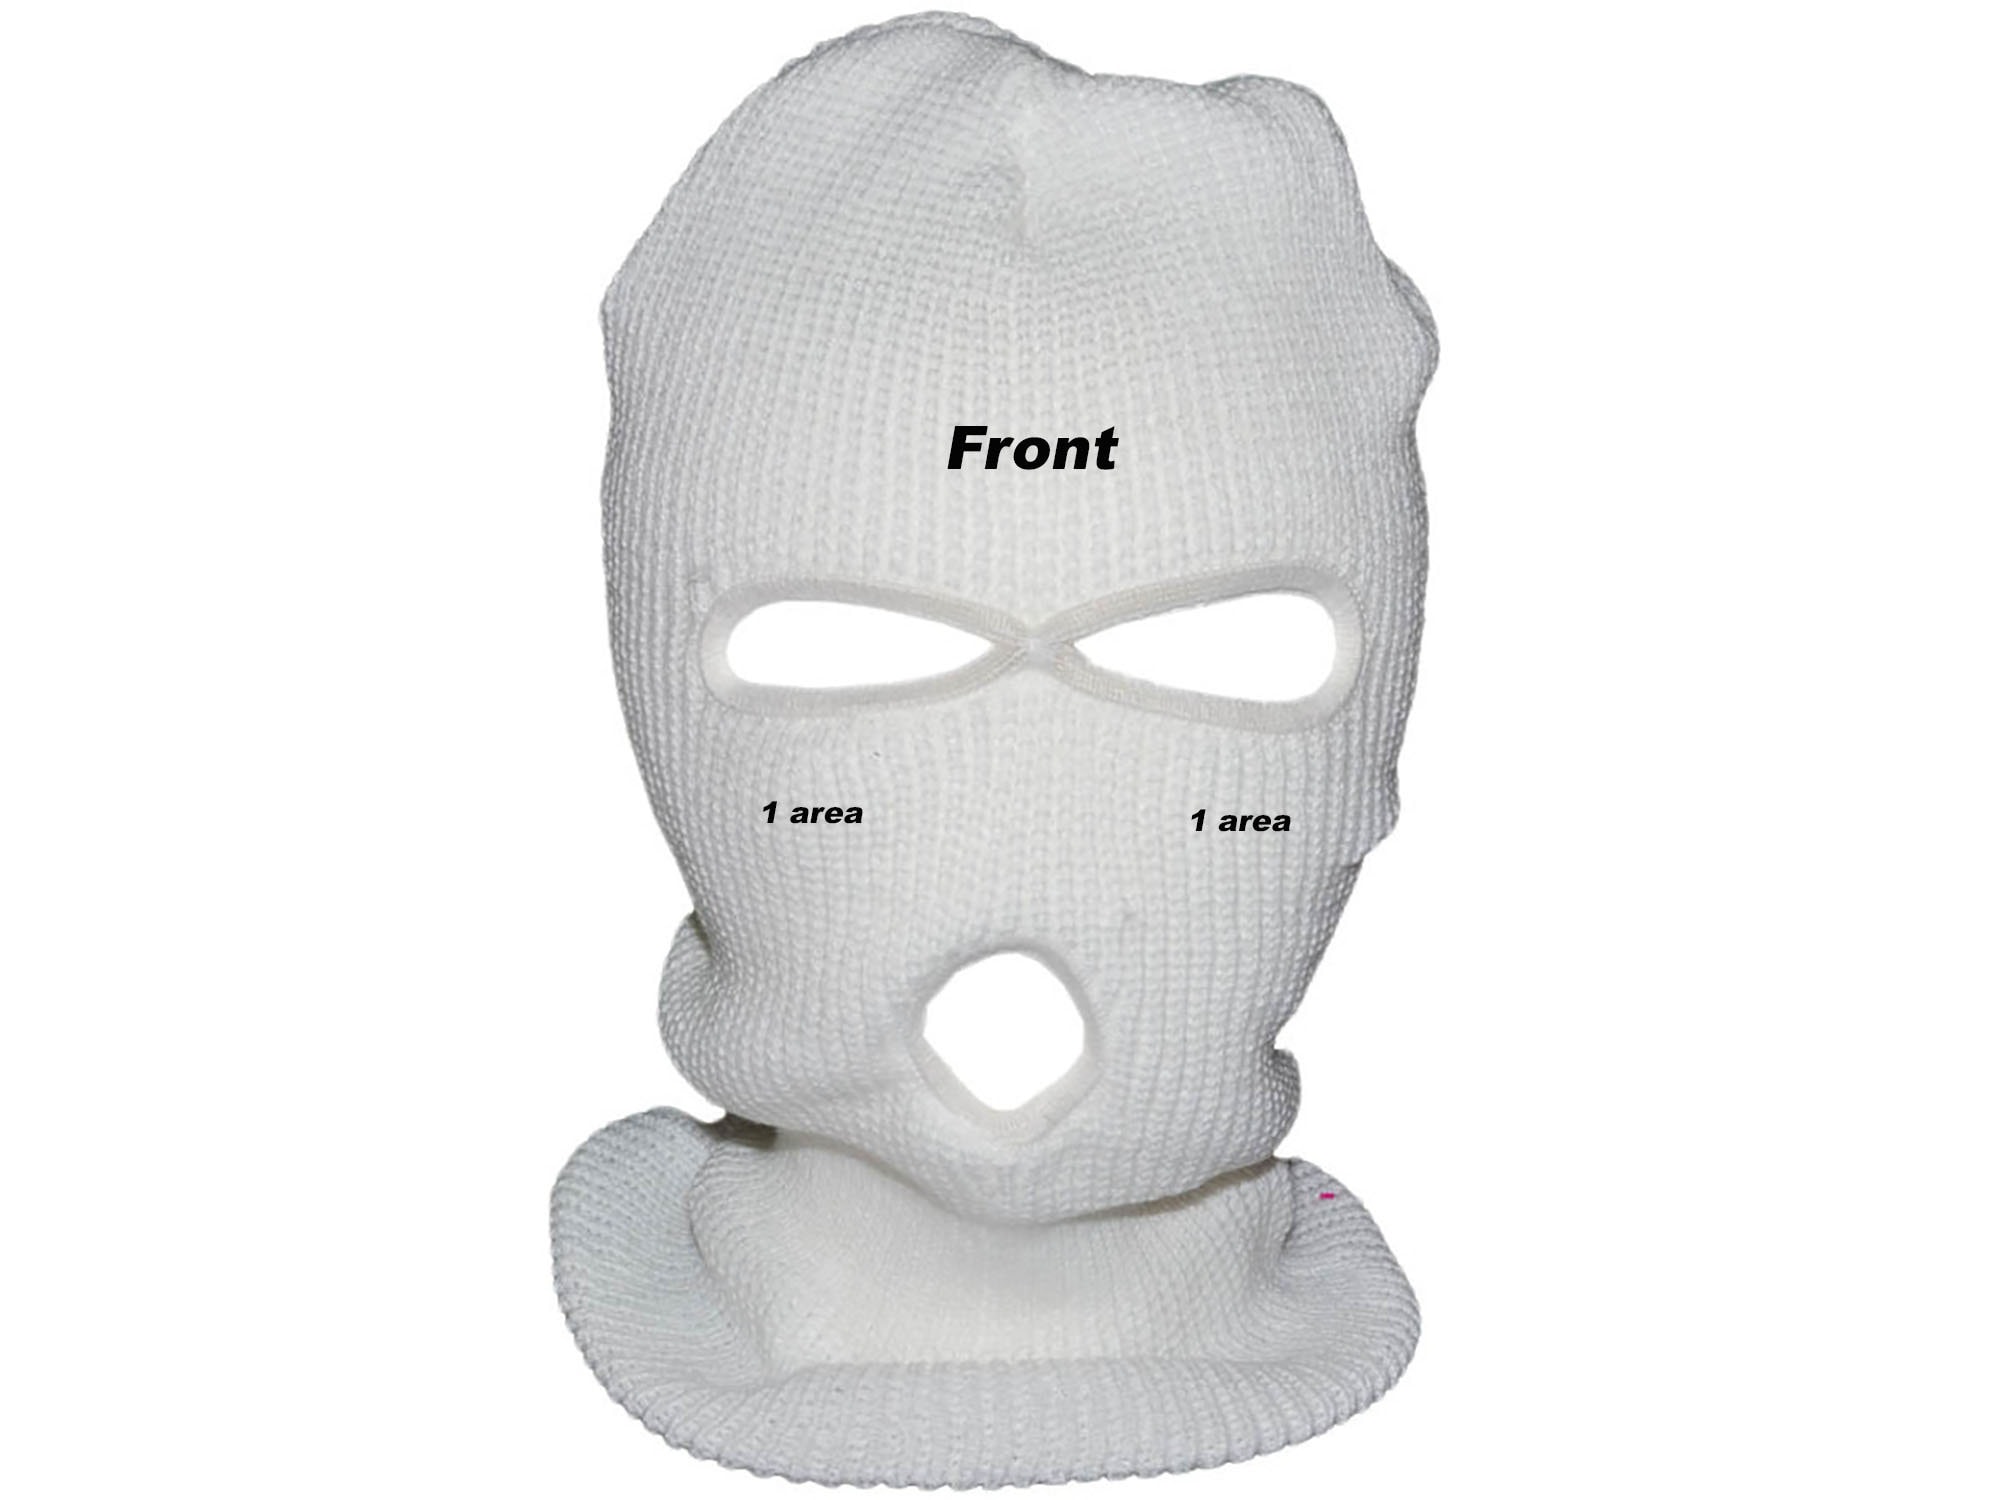 3 Hole Full Face Ski Mask Embroidered Custom Design Balaclava